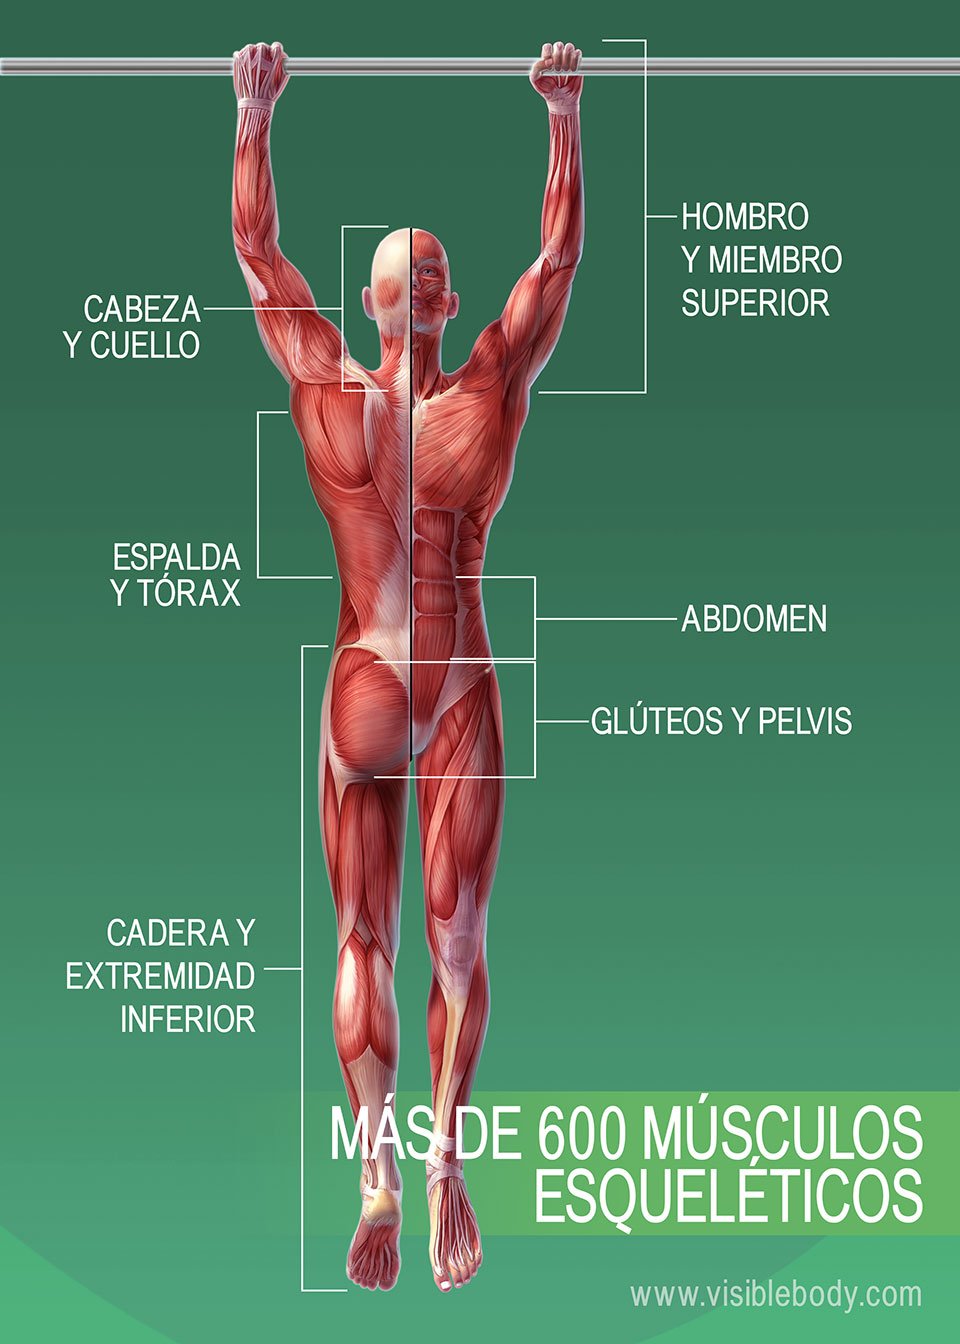 3B-Más de 600 músculos esqueléticos